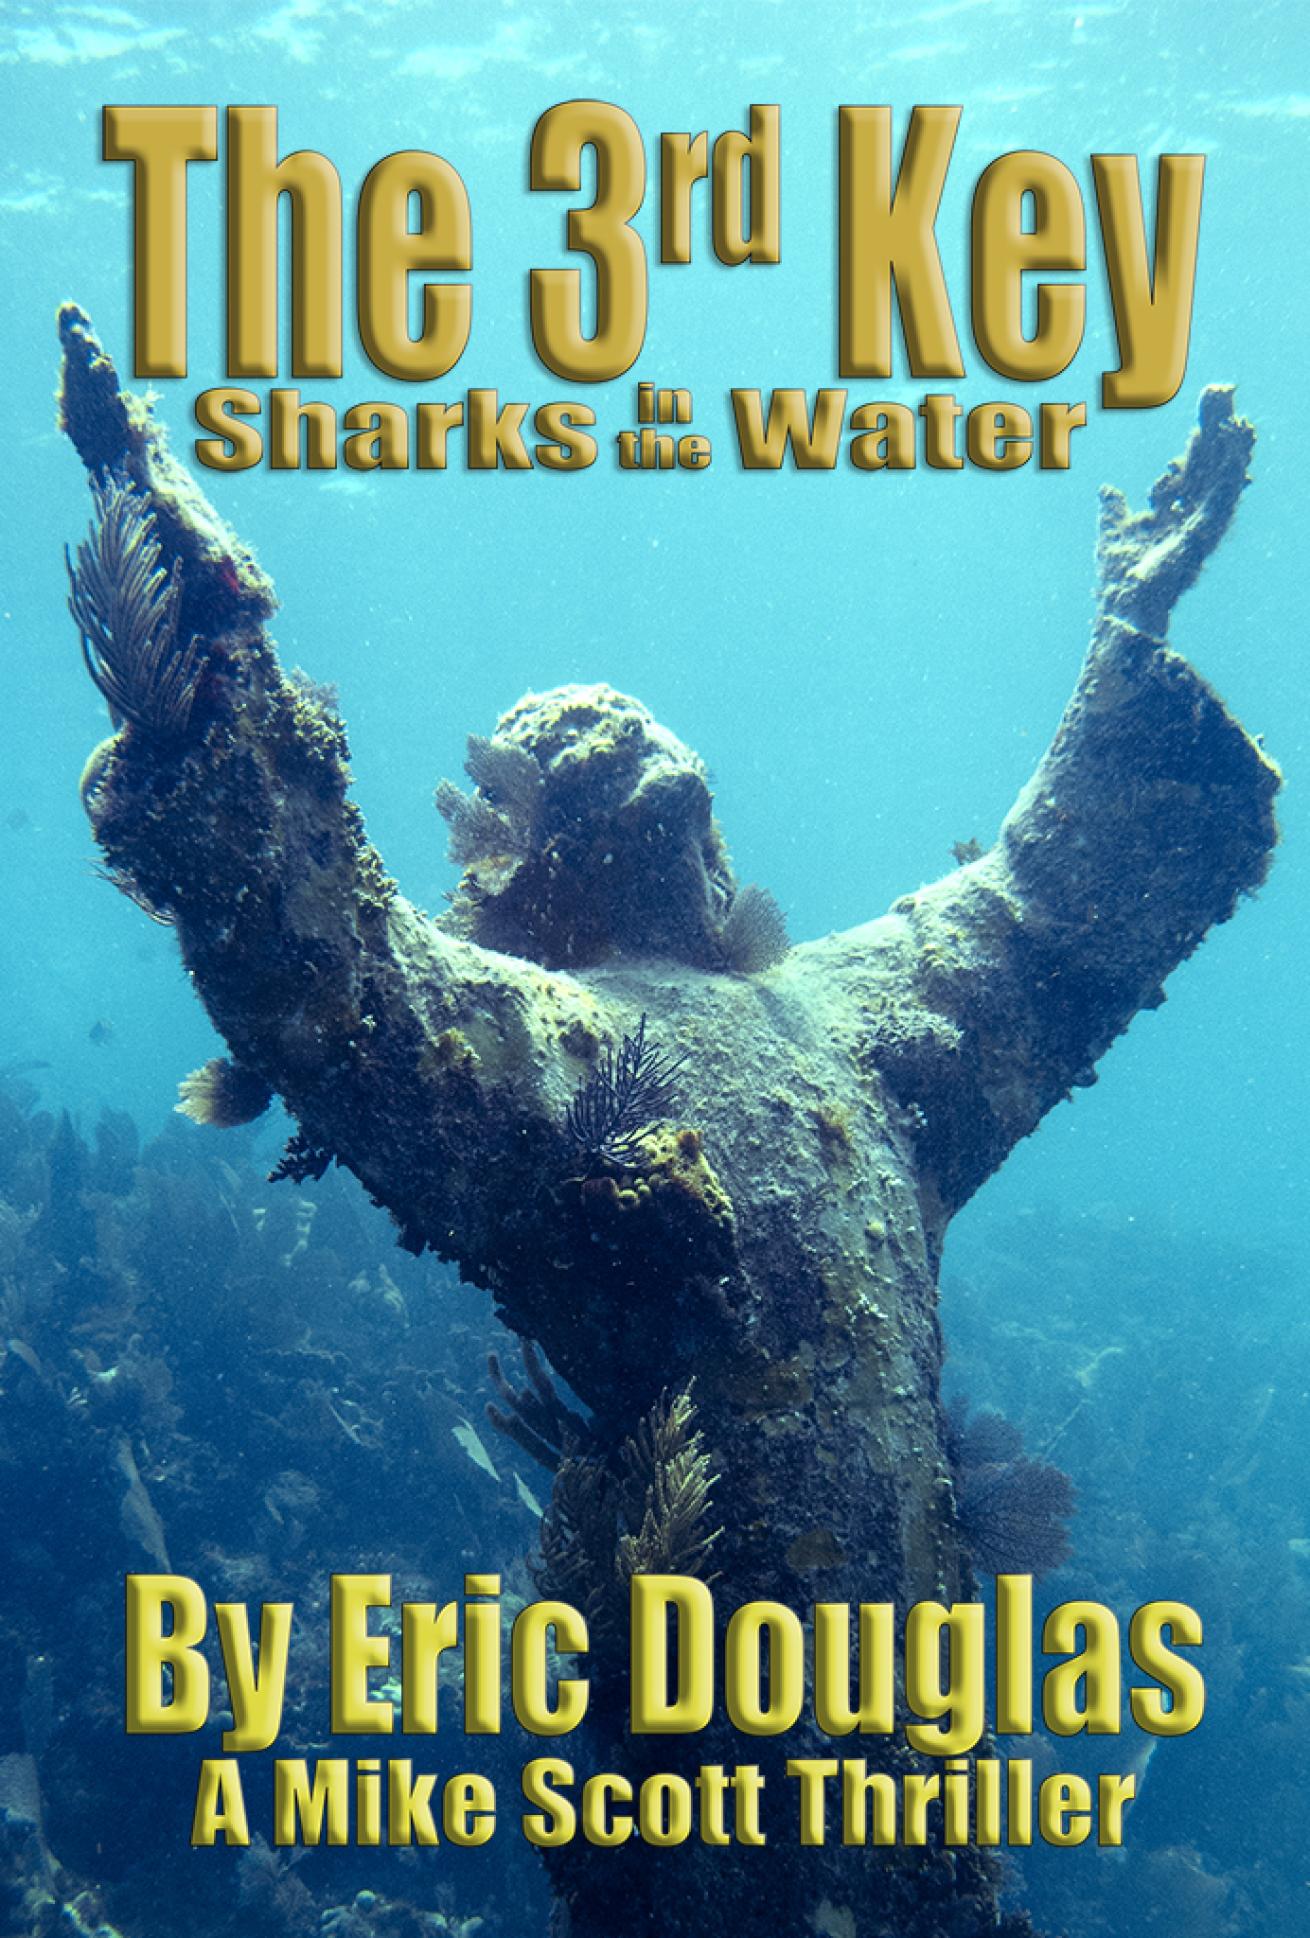 Eric Douglas, the keys, florida keys, novel, underwater, the third key